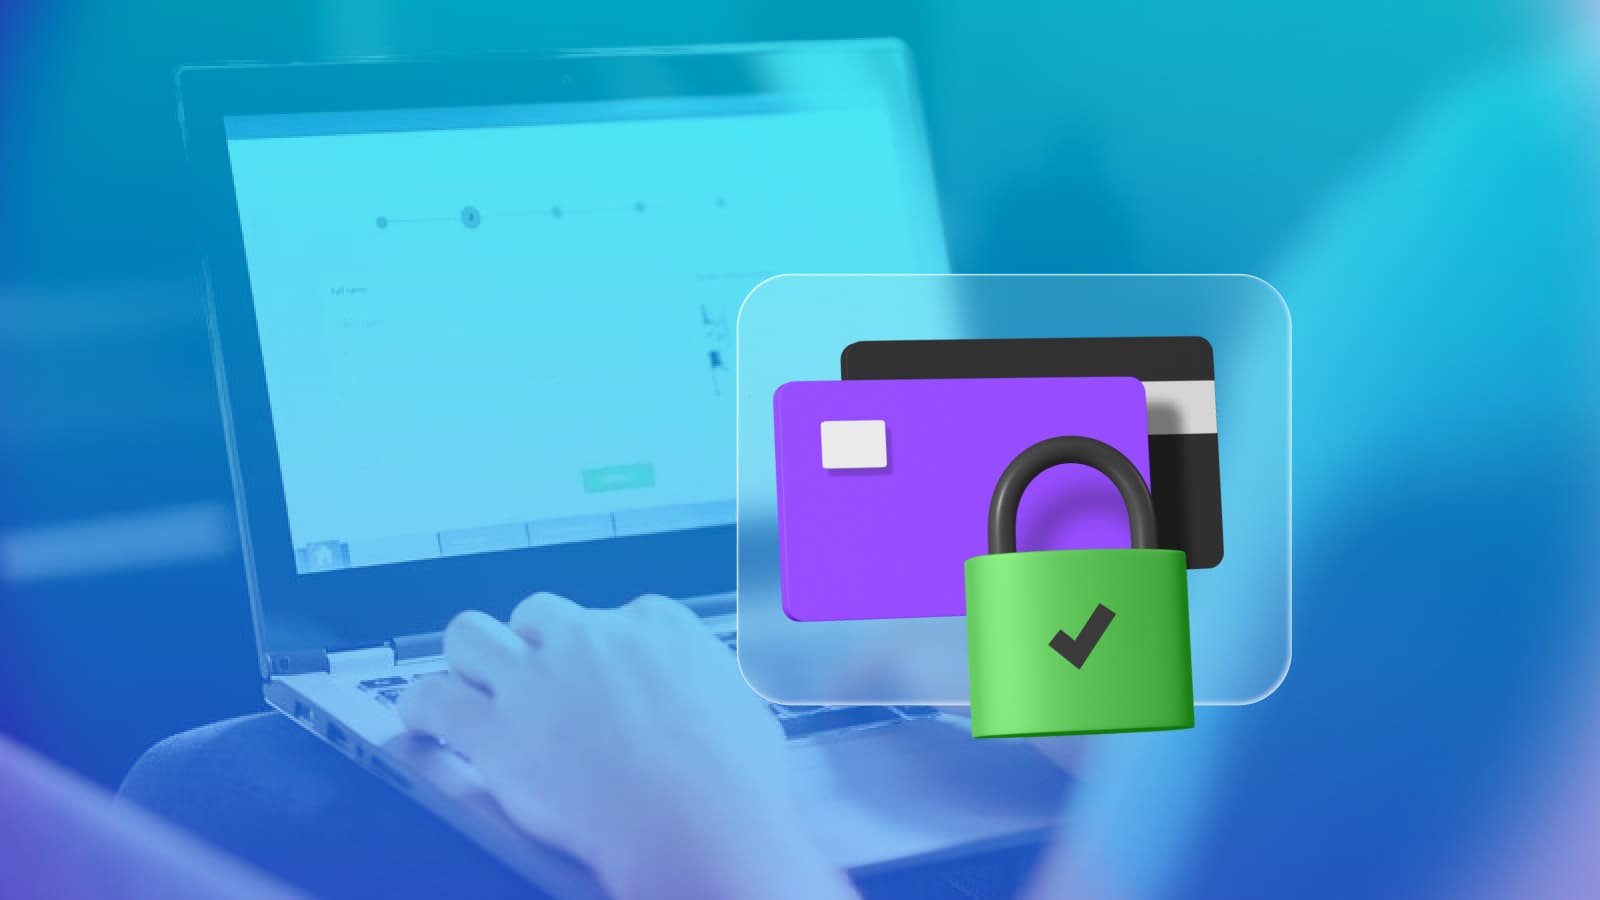 Shopify Payments предлагает продавцу защиту от мошеннических операций, которая включена во все тарифные планы сервиса.